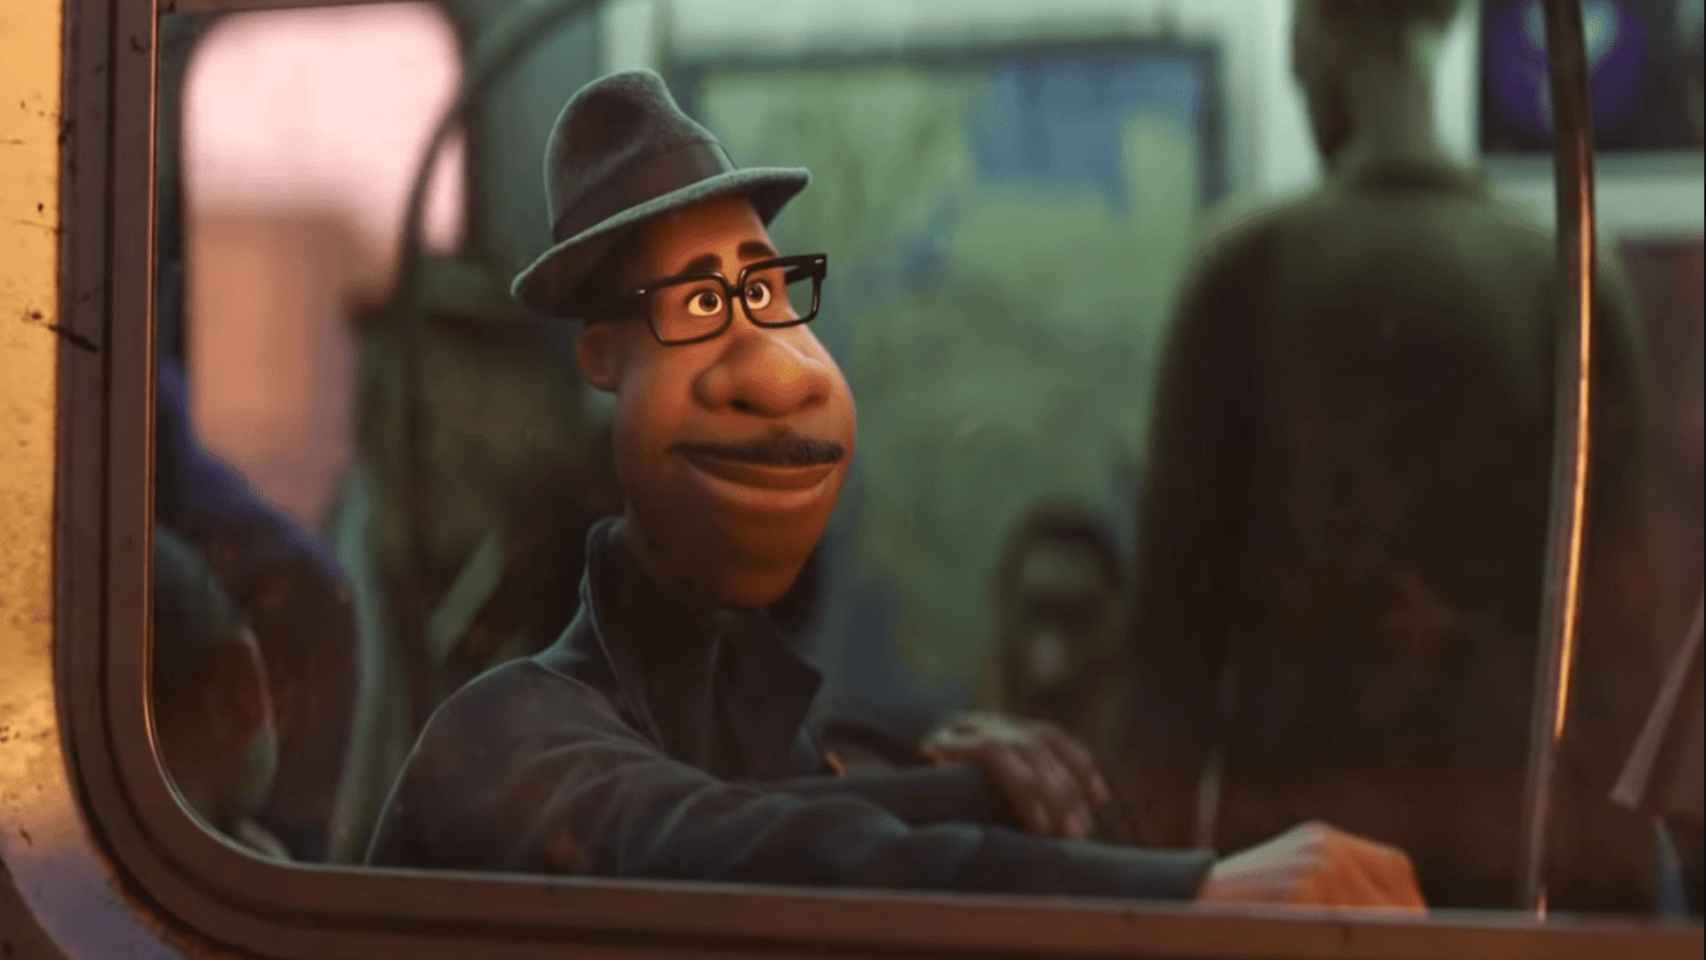 La película de Pixar ha provocado un apasionado debate en las redes sociales.